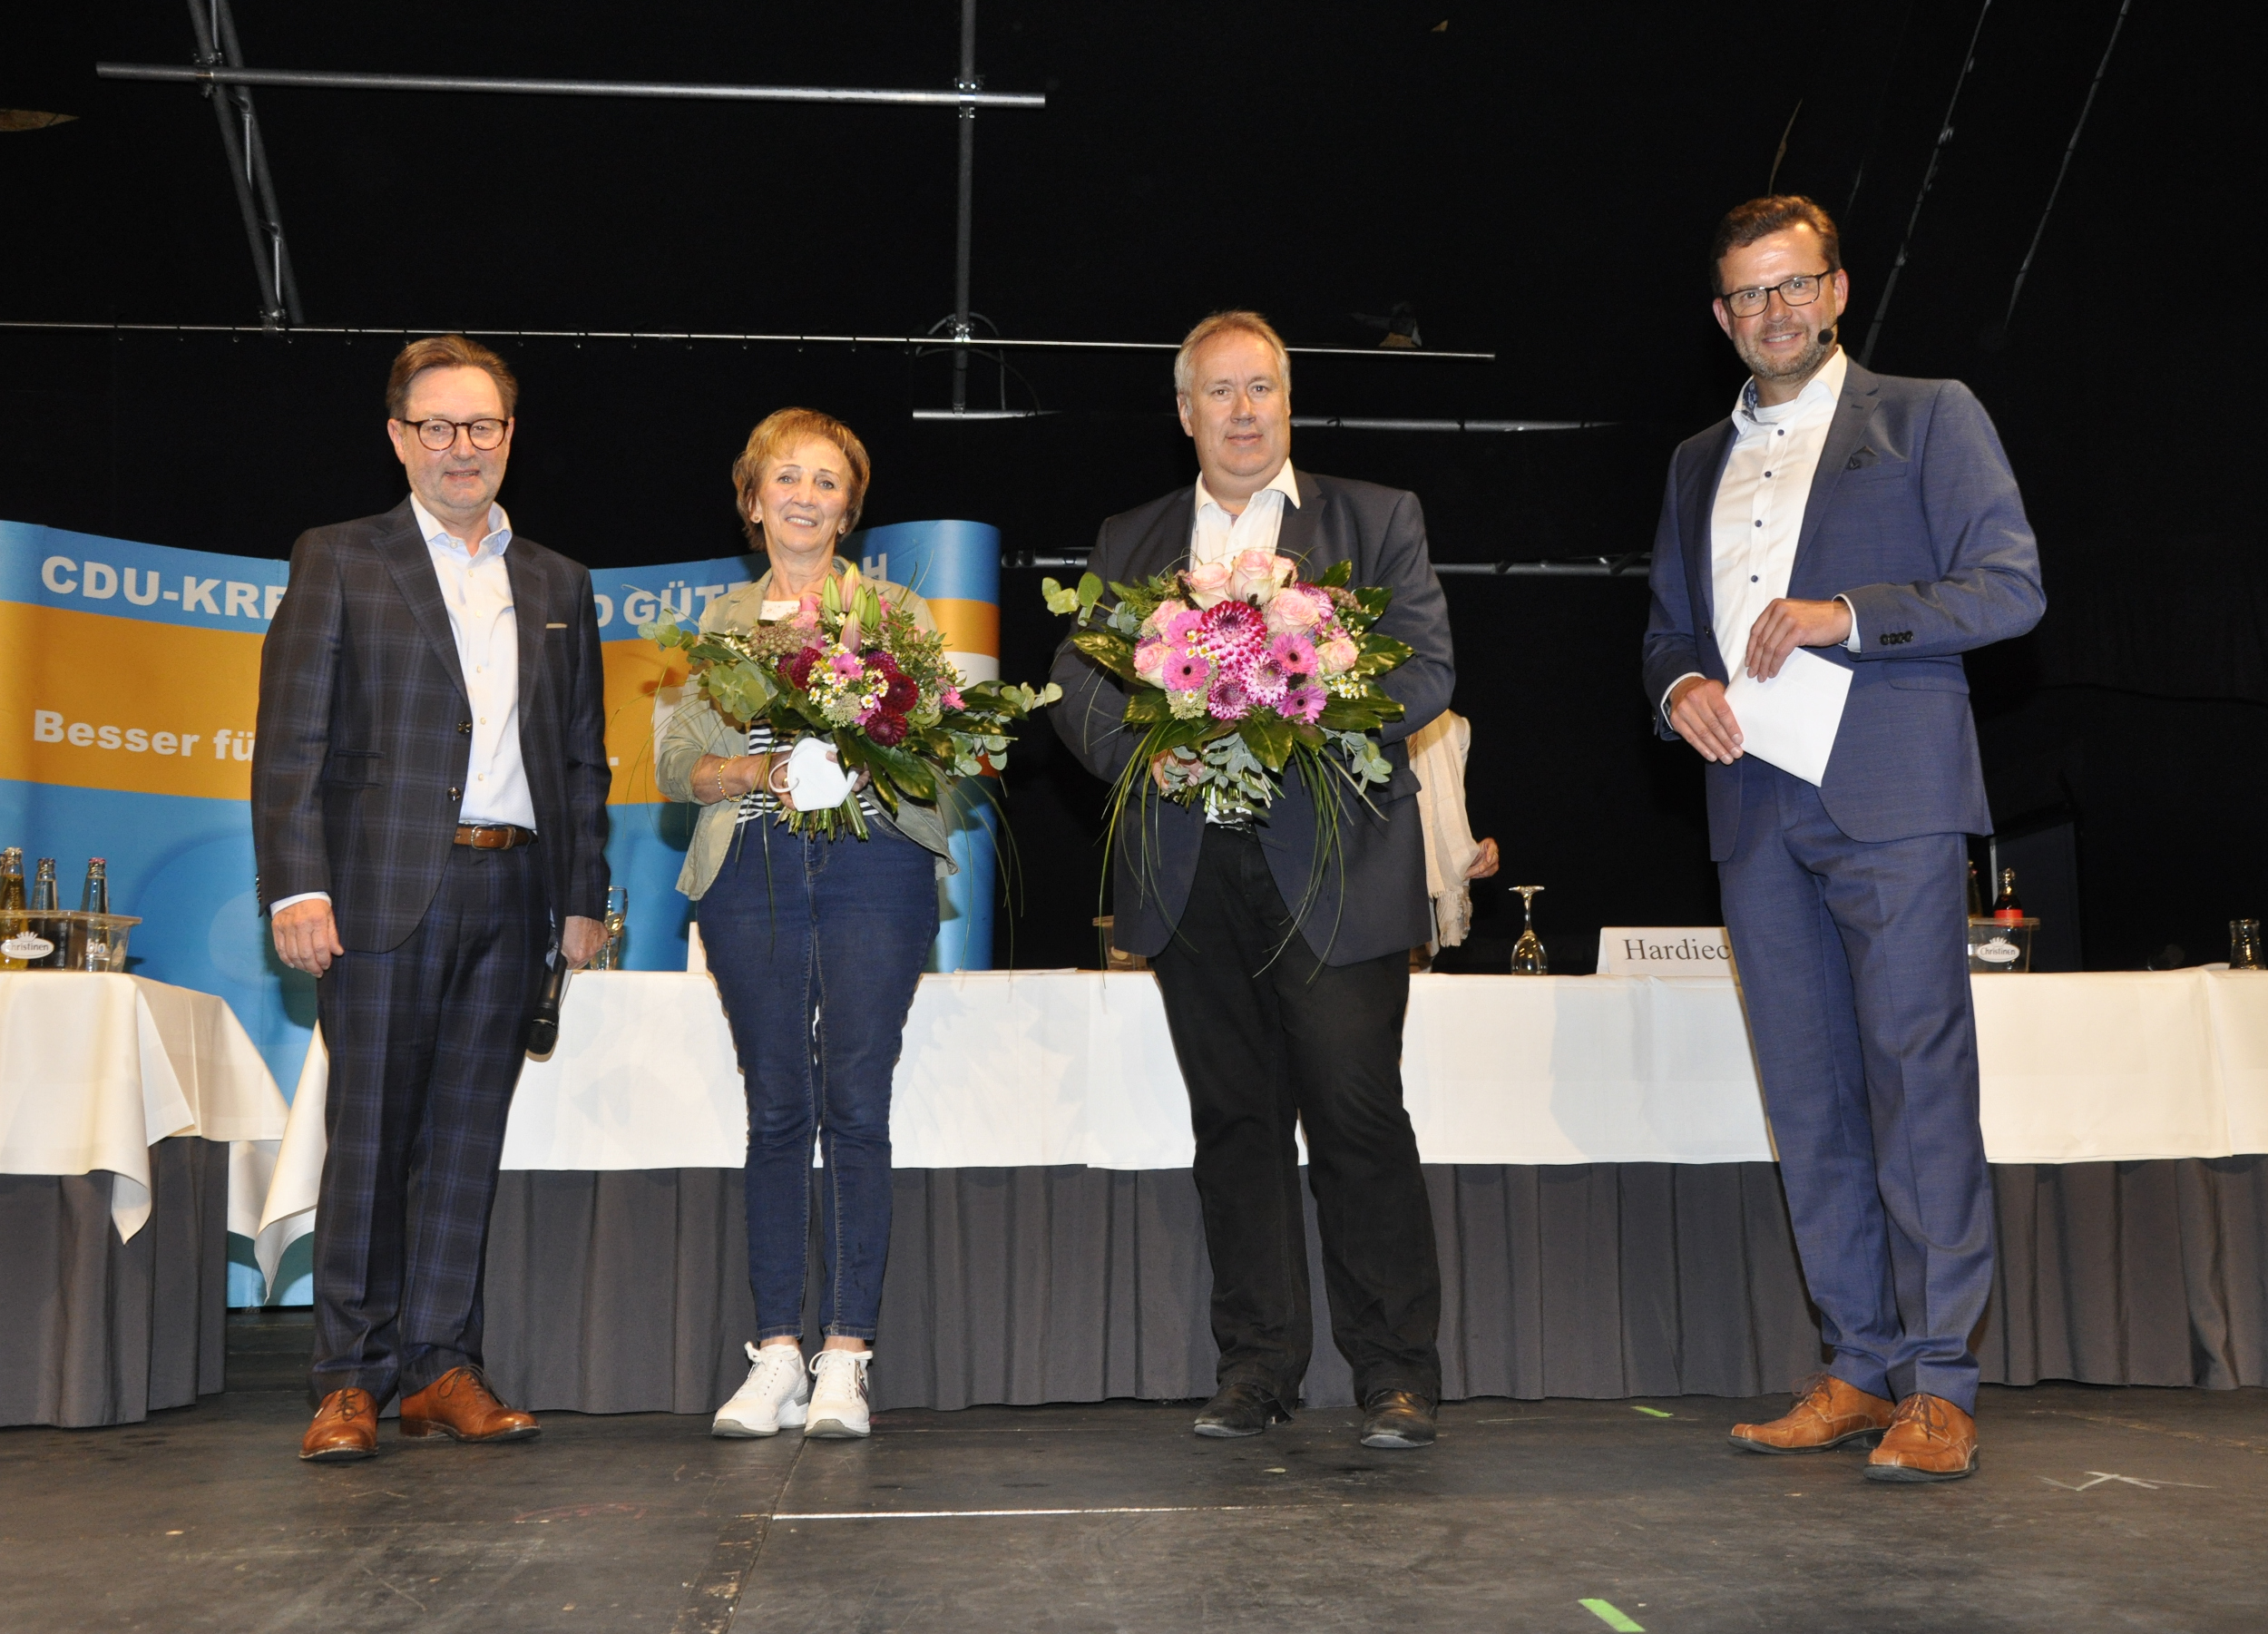 Zum Dank für die erfolgreiche Mitgliederwerbung gab es Blumen: Über 138 neue CDU-Mitglieder freuten sich (v.l.) Ulrich Wesolowski, Marianne Kampwerth, Axel Reimers und Raphael Tigges.